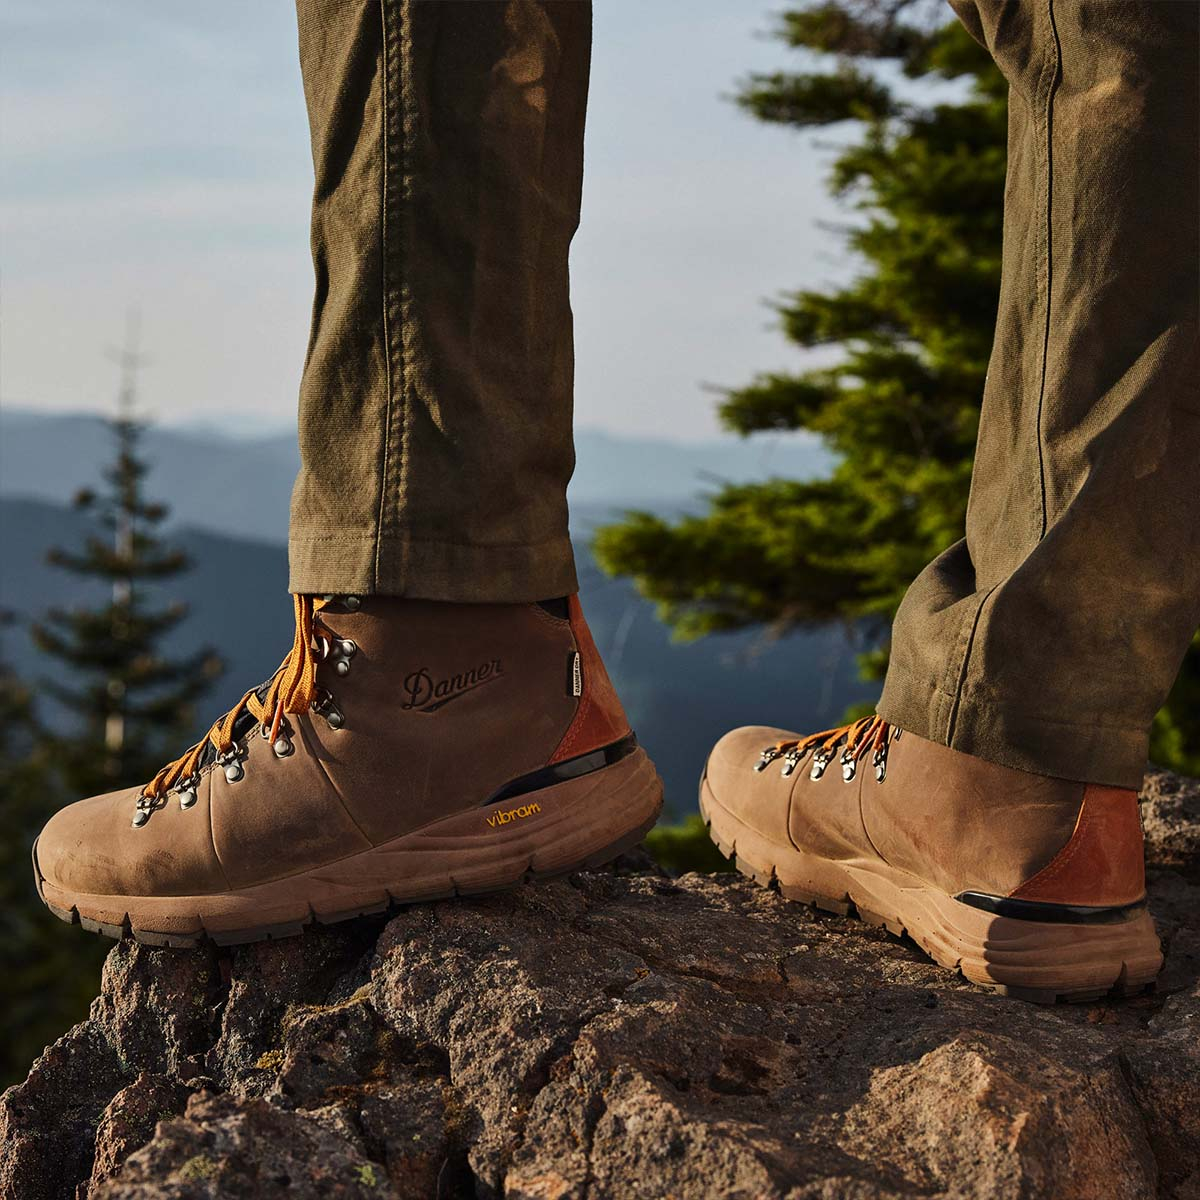 Danner Mountain 600 Boot Rich Brown, perfecte bergschoenen voor wandelingen in de natuur